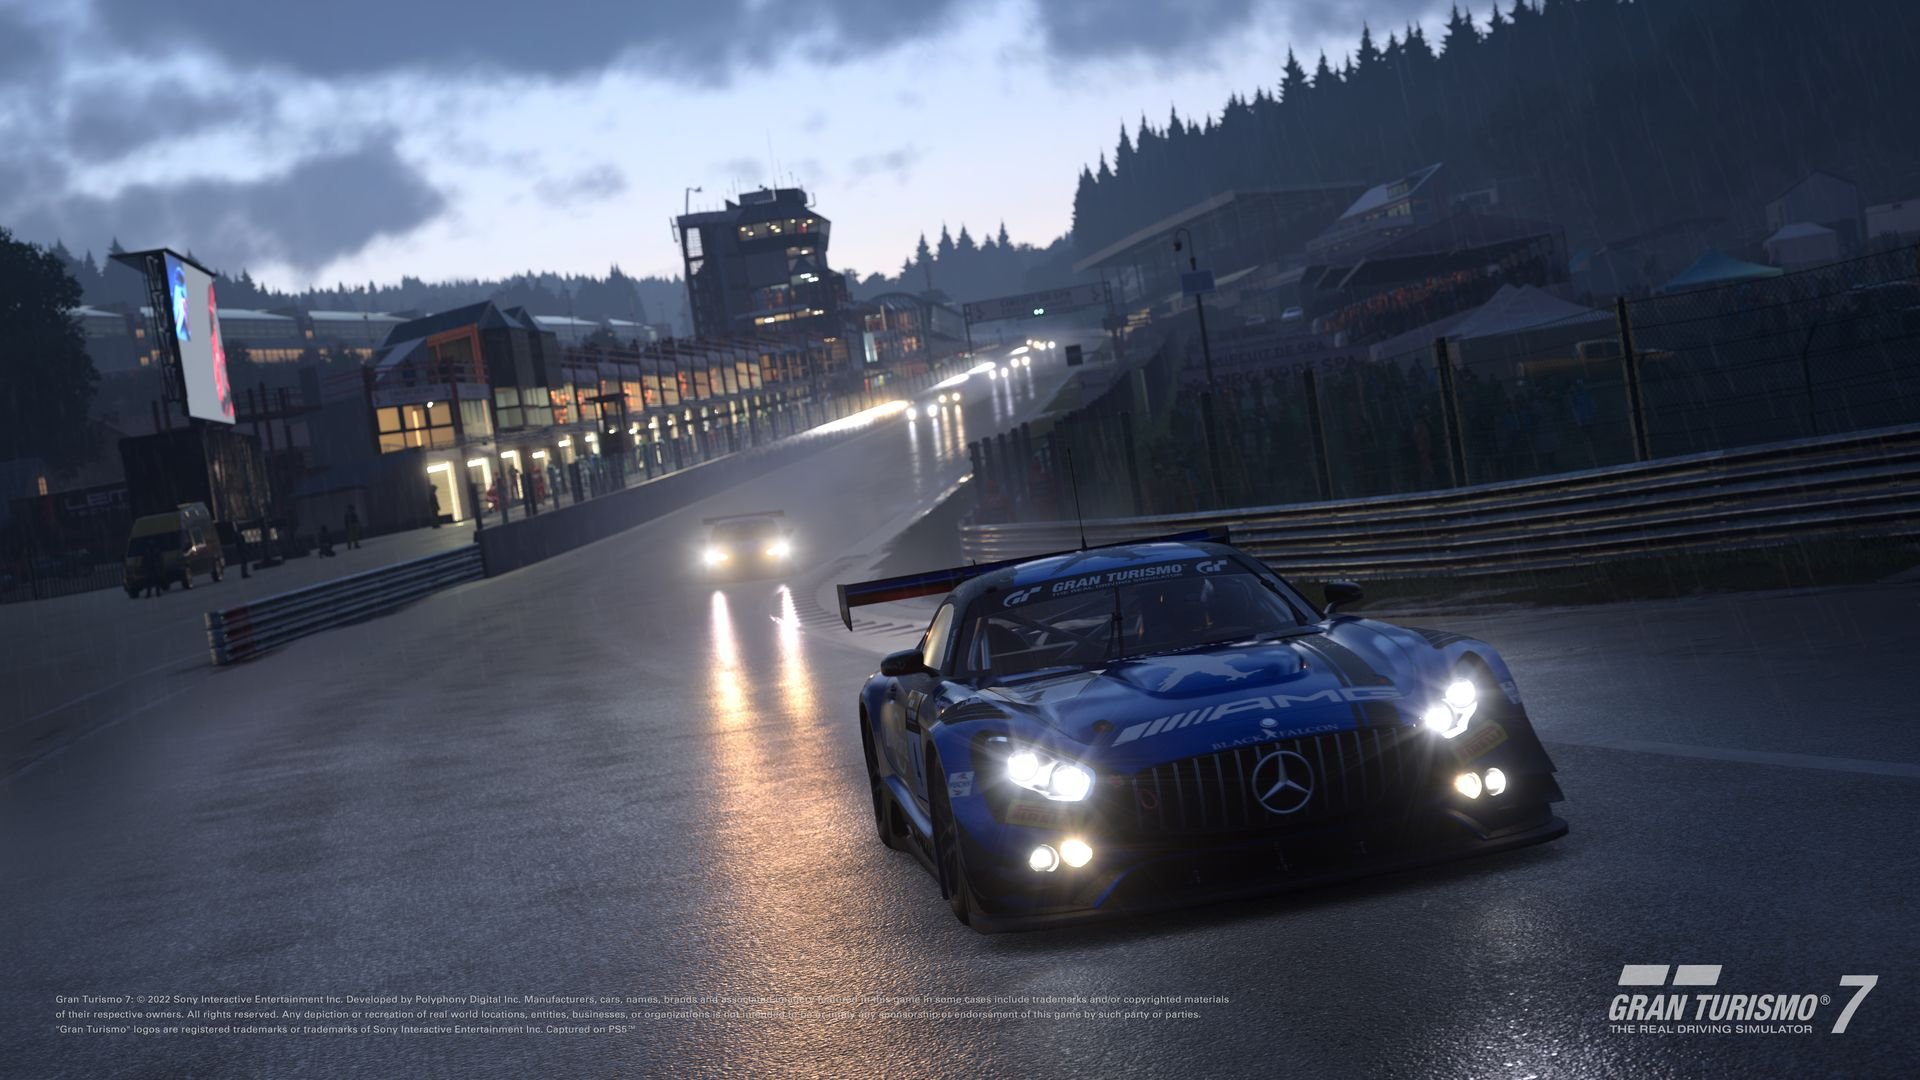 More information about "Gran Turismo 7: update di Aprile disponibile con 3 nuove auto e Spa 24 Ore"